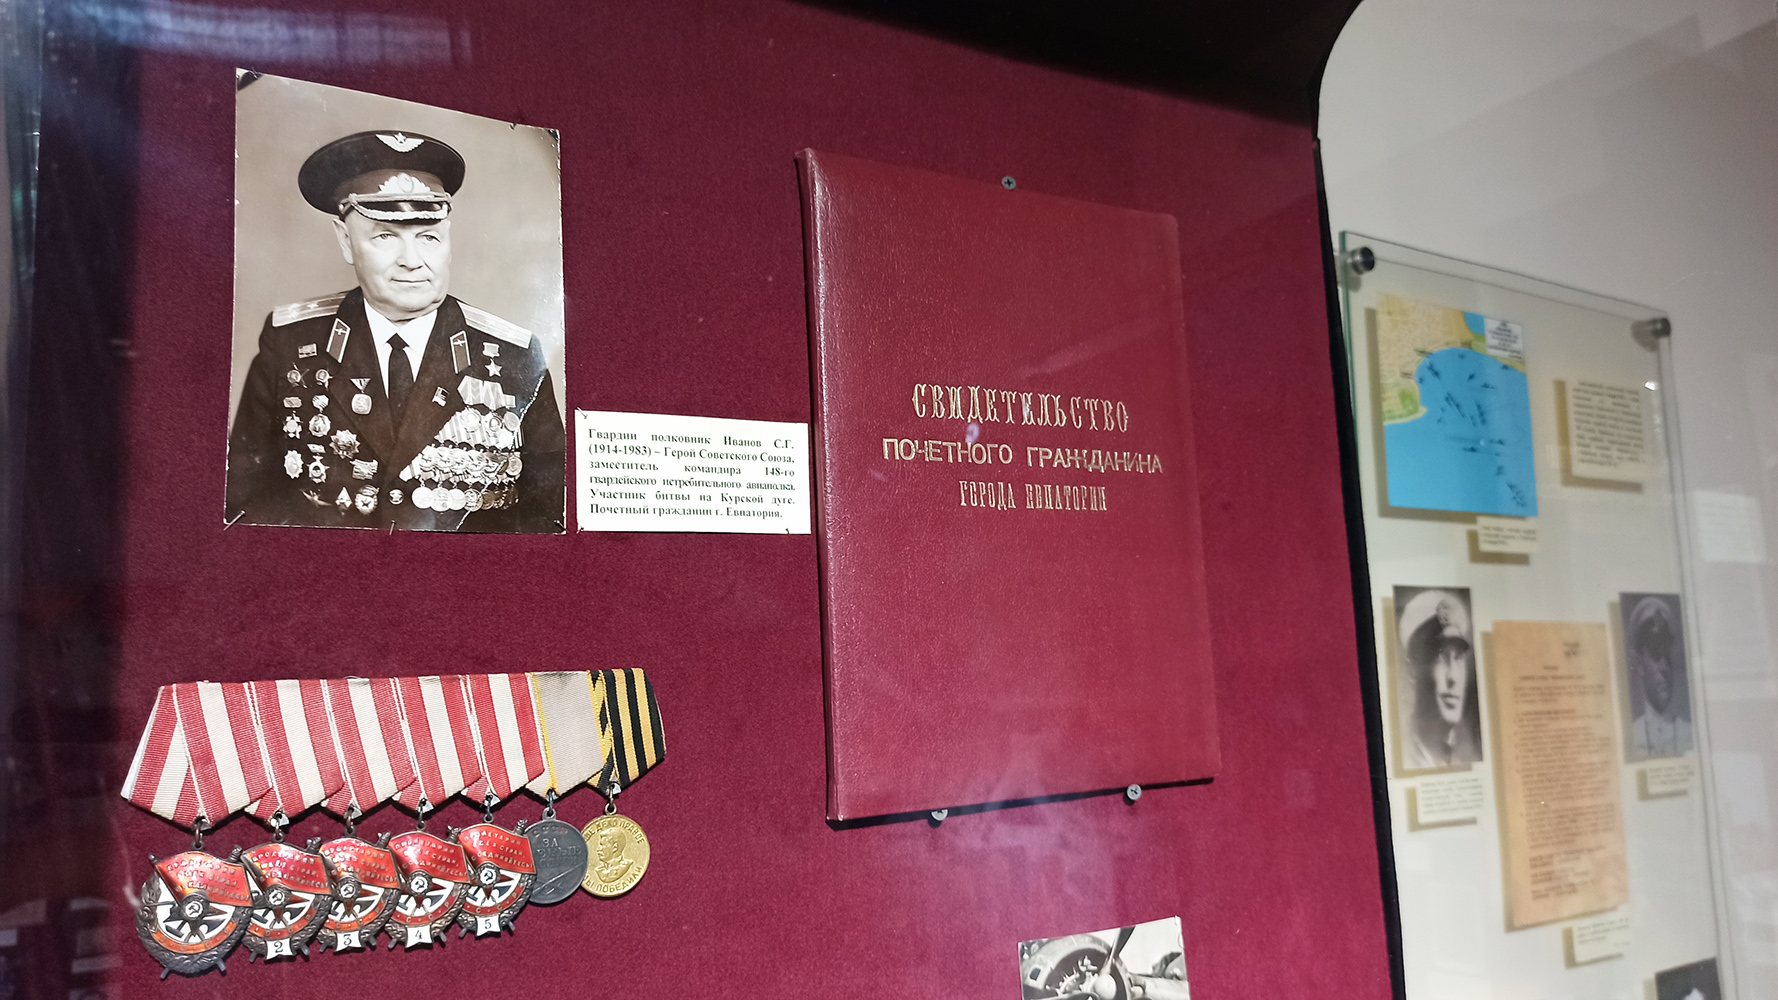 Мероприятия в Евпаторийском краеведческом музее  ко Дню Государственного флага РФ  и к 80-й годовщине победы в Курской битве